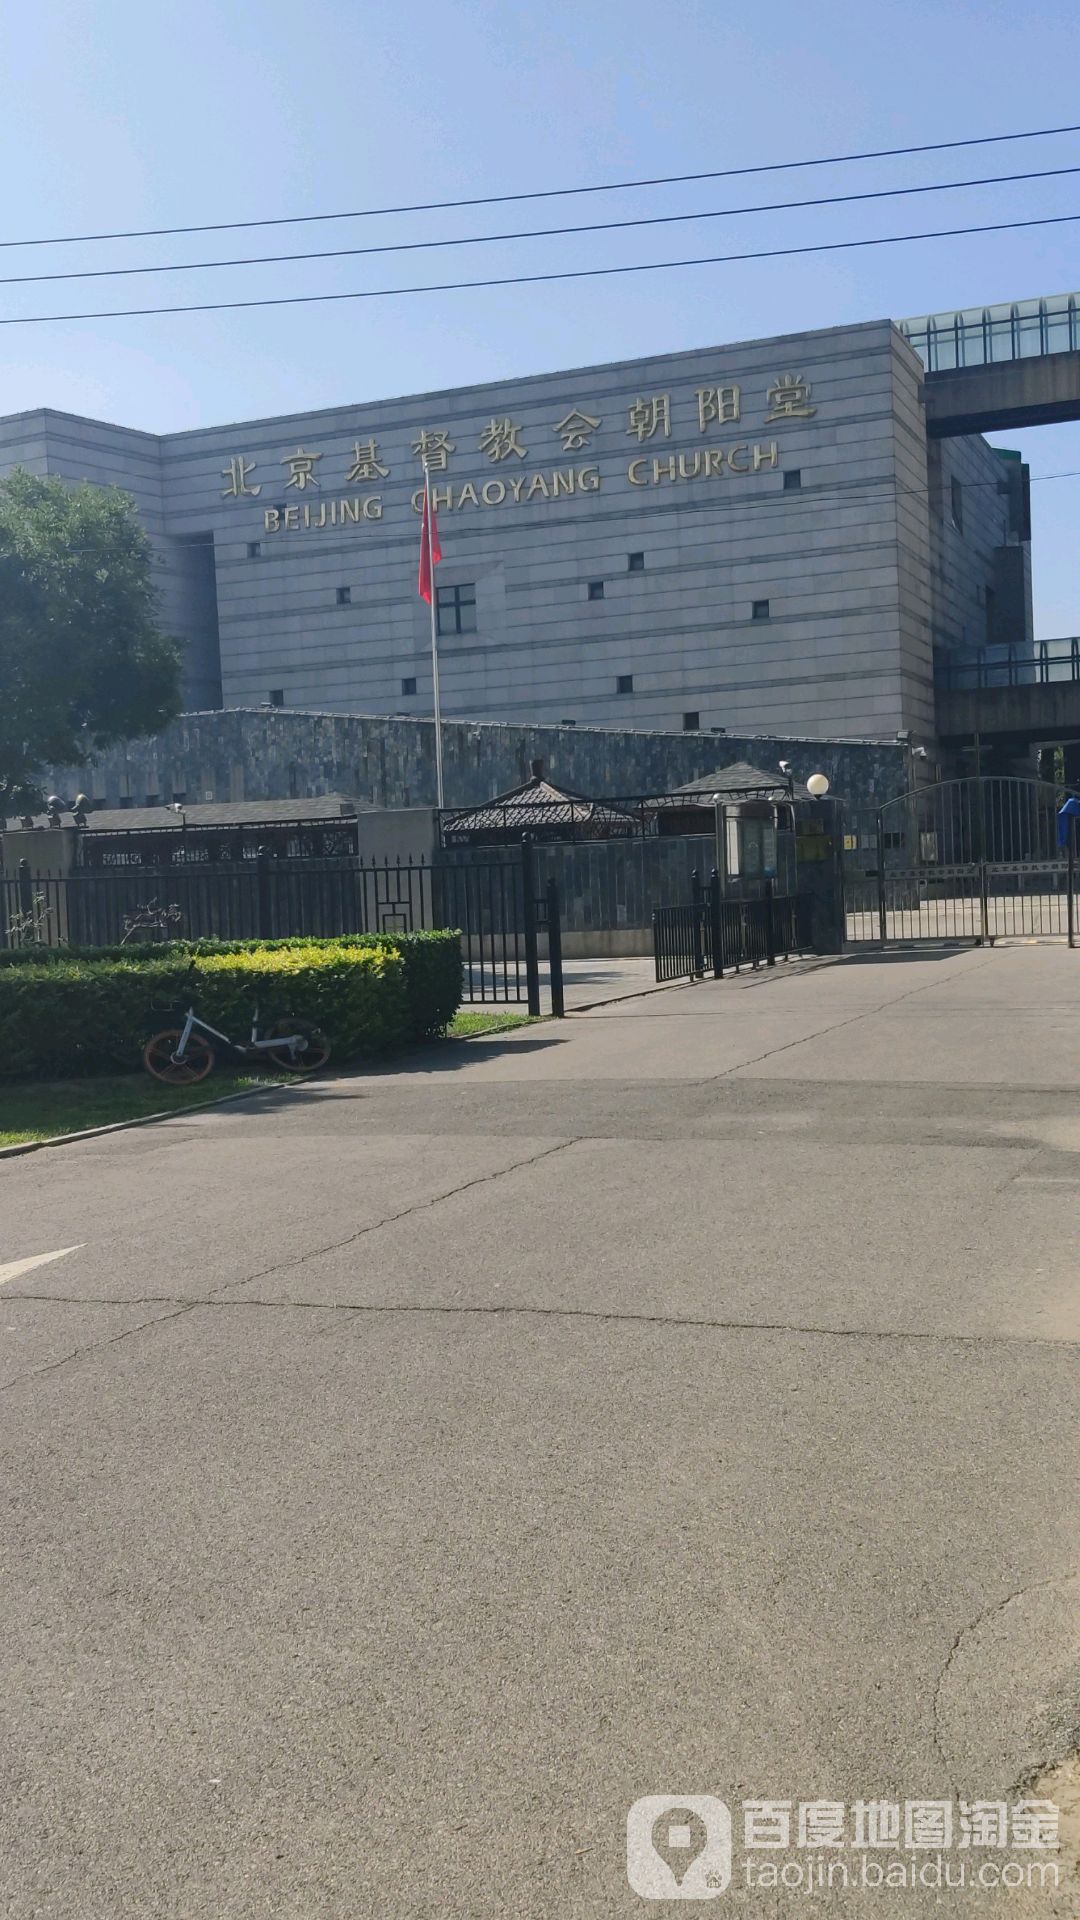 北京基督教堂朝阳堂